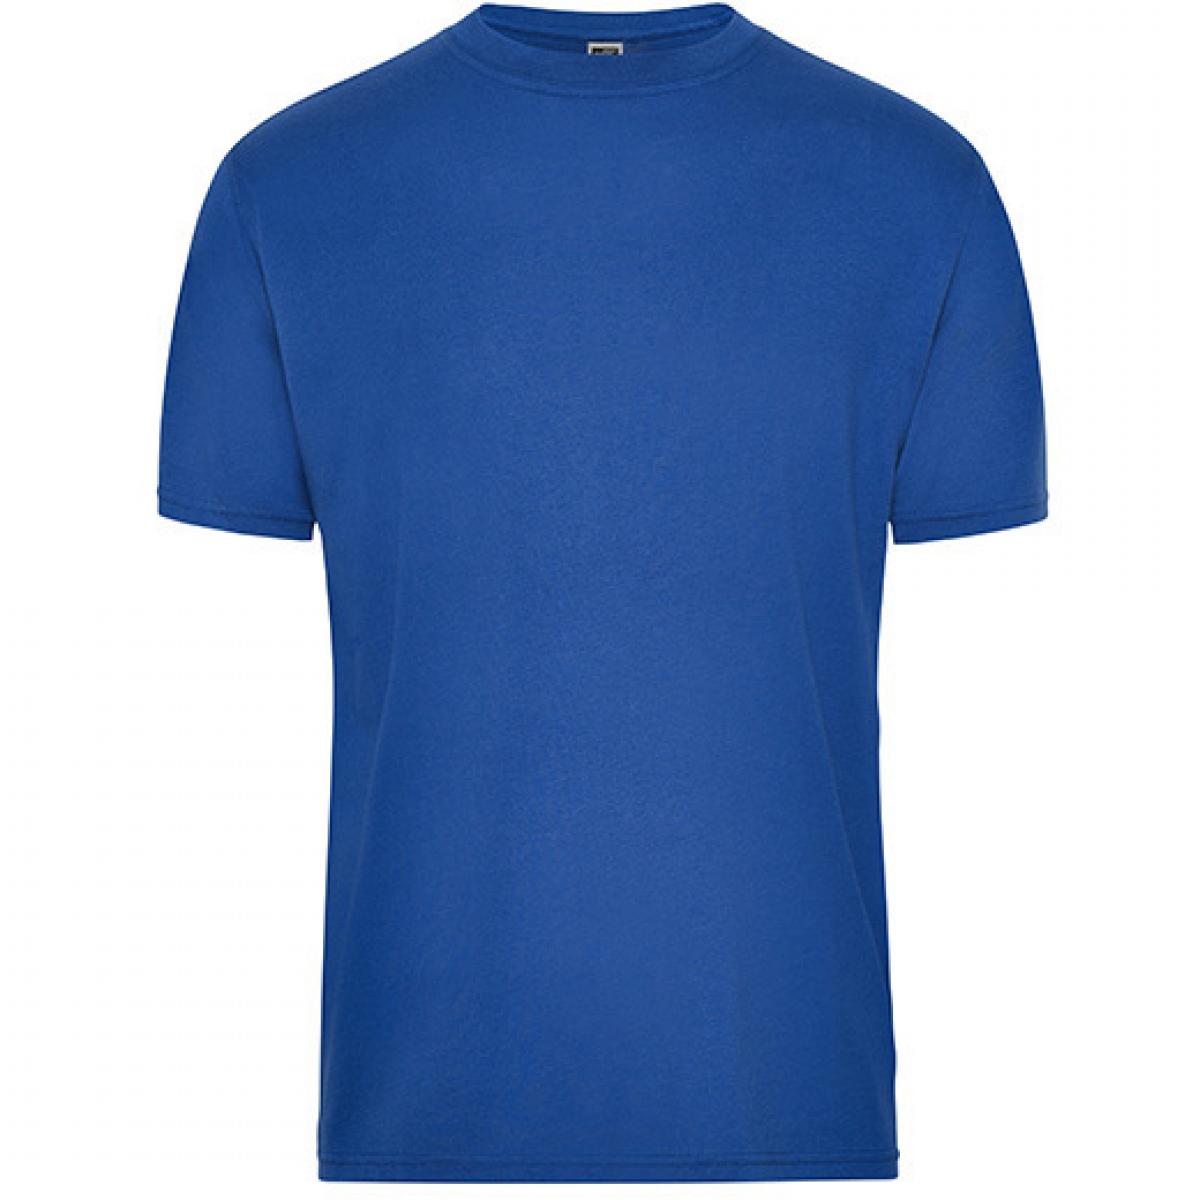 Hersteller: James+Nicholson Herstellernummer: JN1808 Artikelbezeichnung: Men‘s BIO Workwear T-Shirt, Waschbar bis 60 °C Farbe: Royal